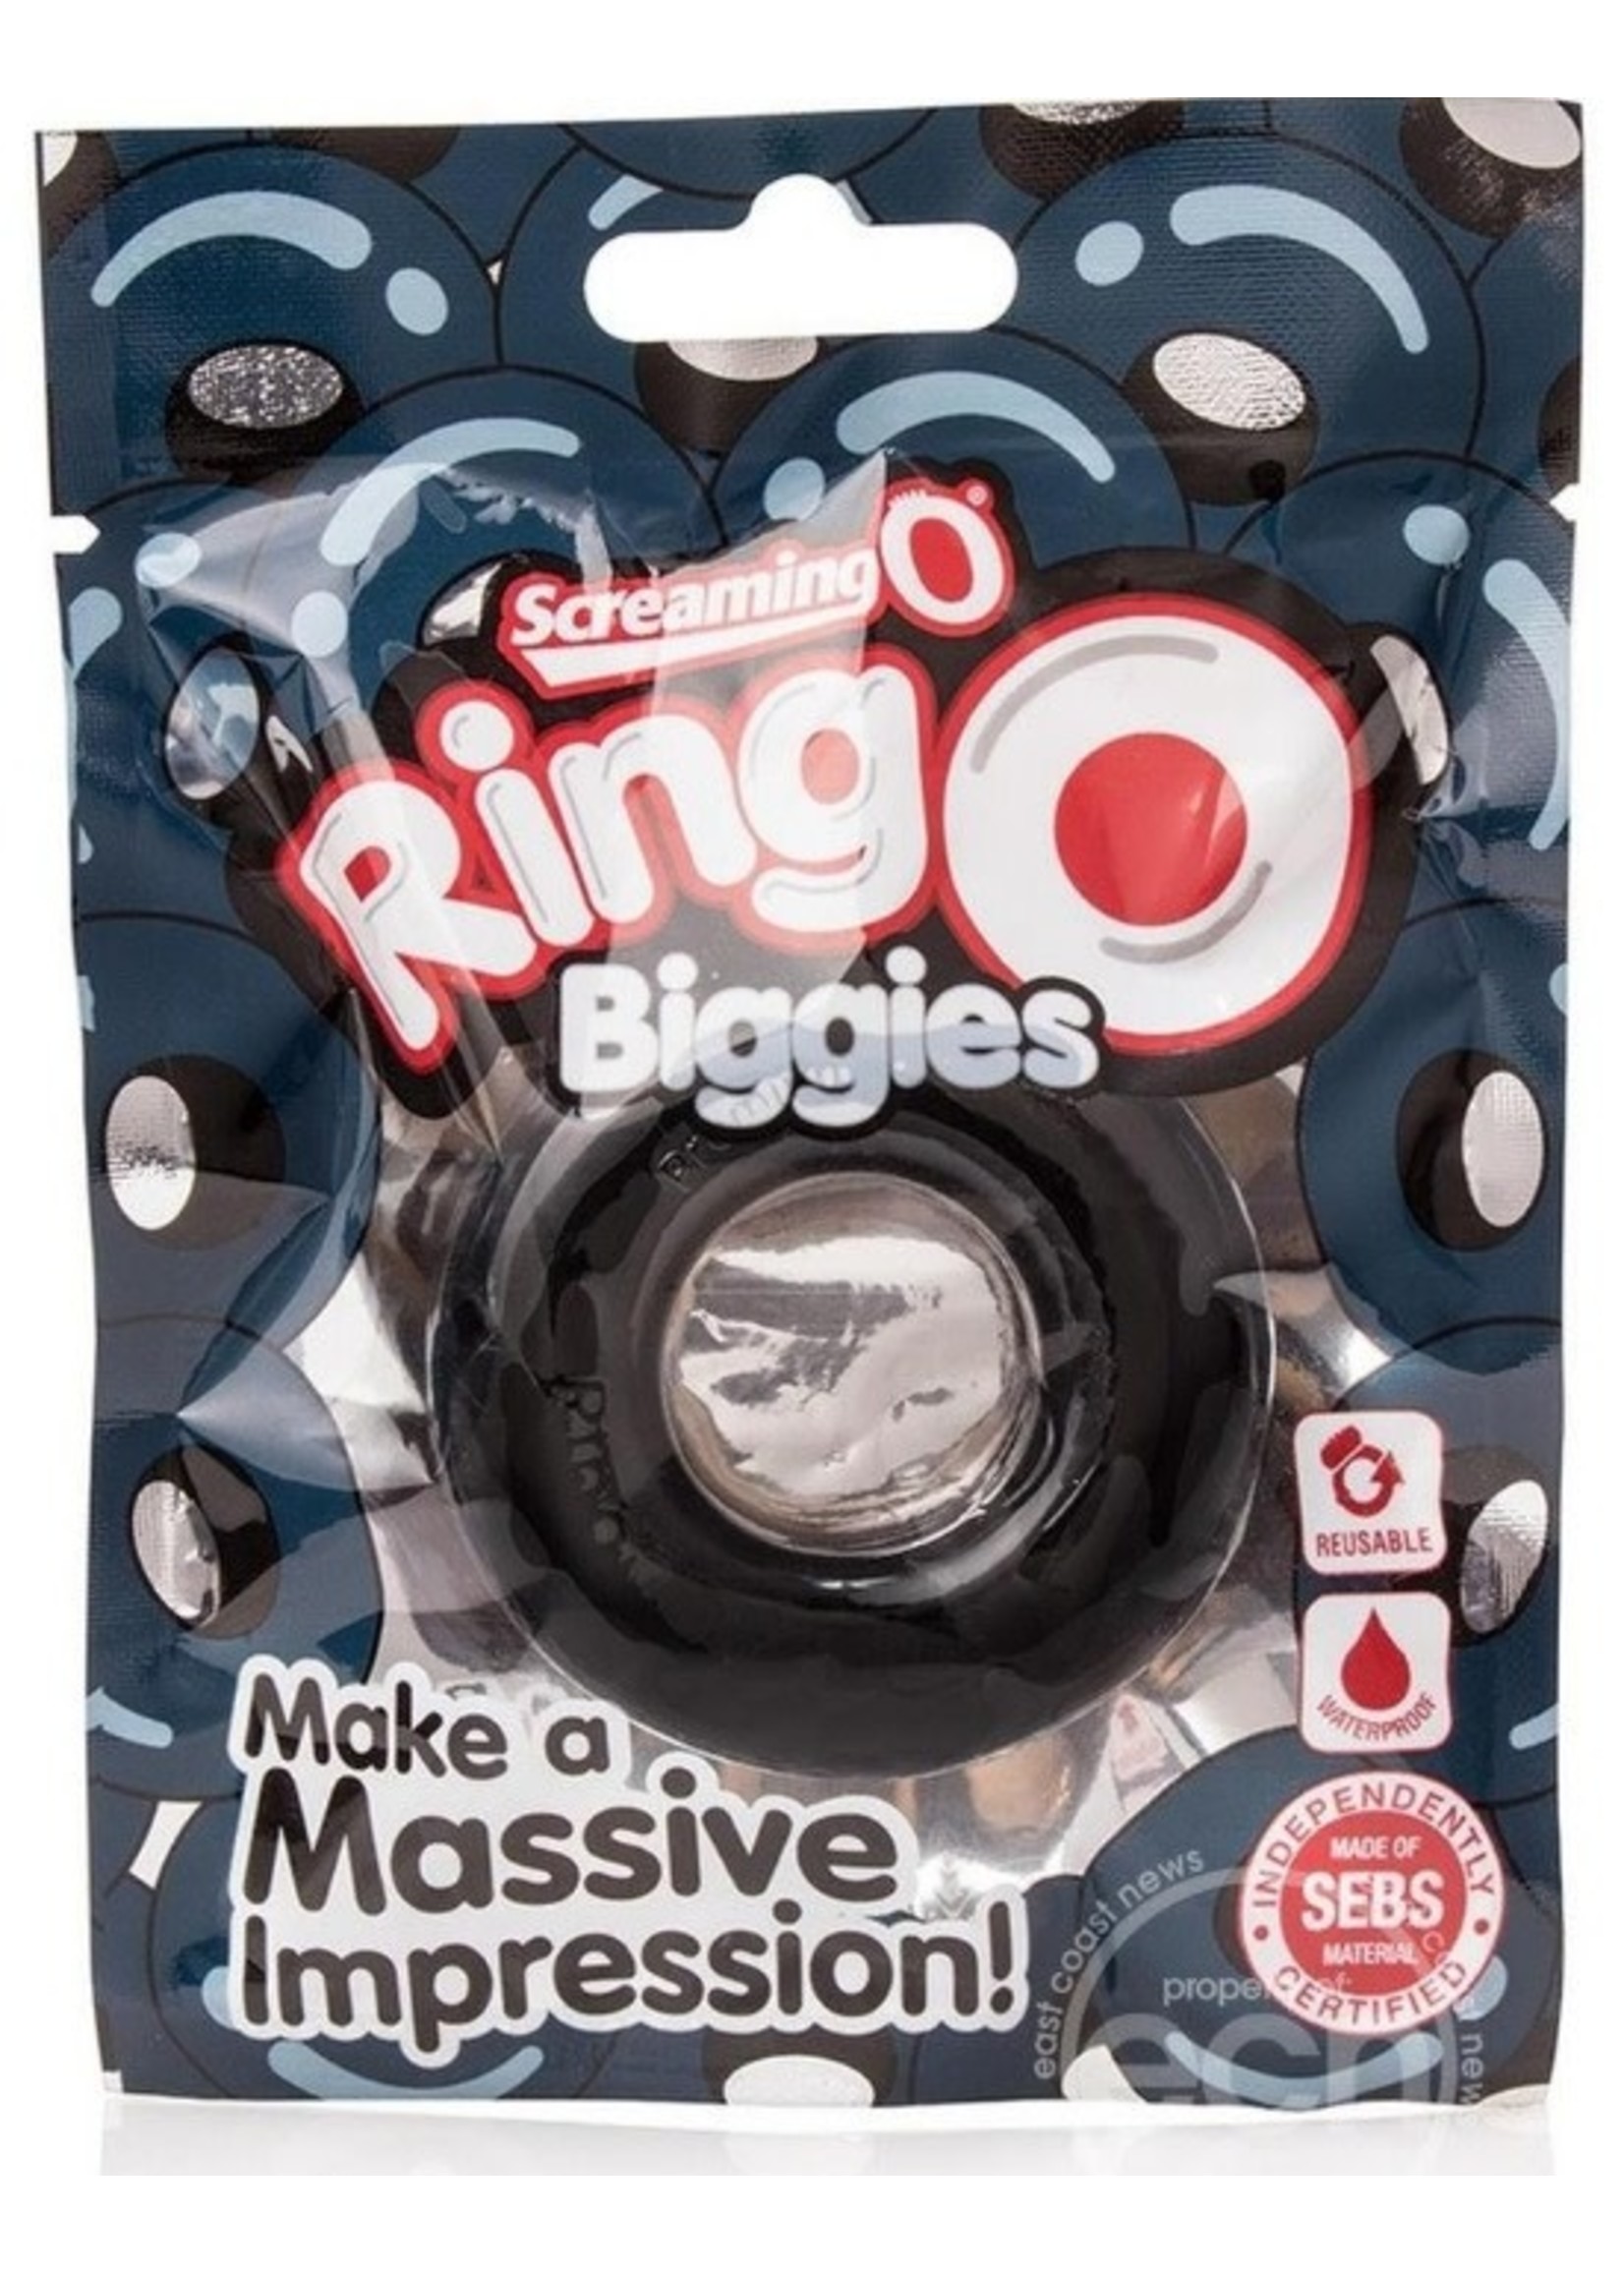 RingO Biggies Cock Rings